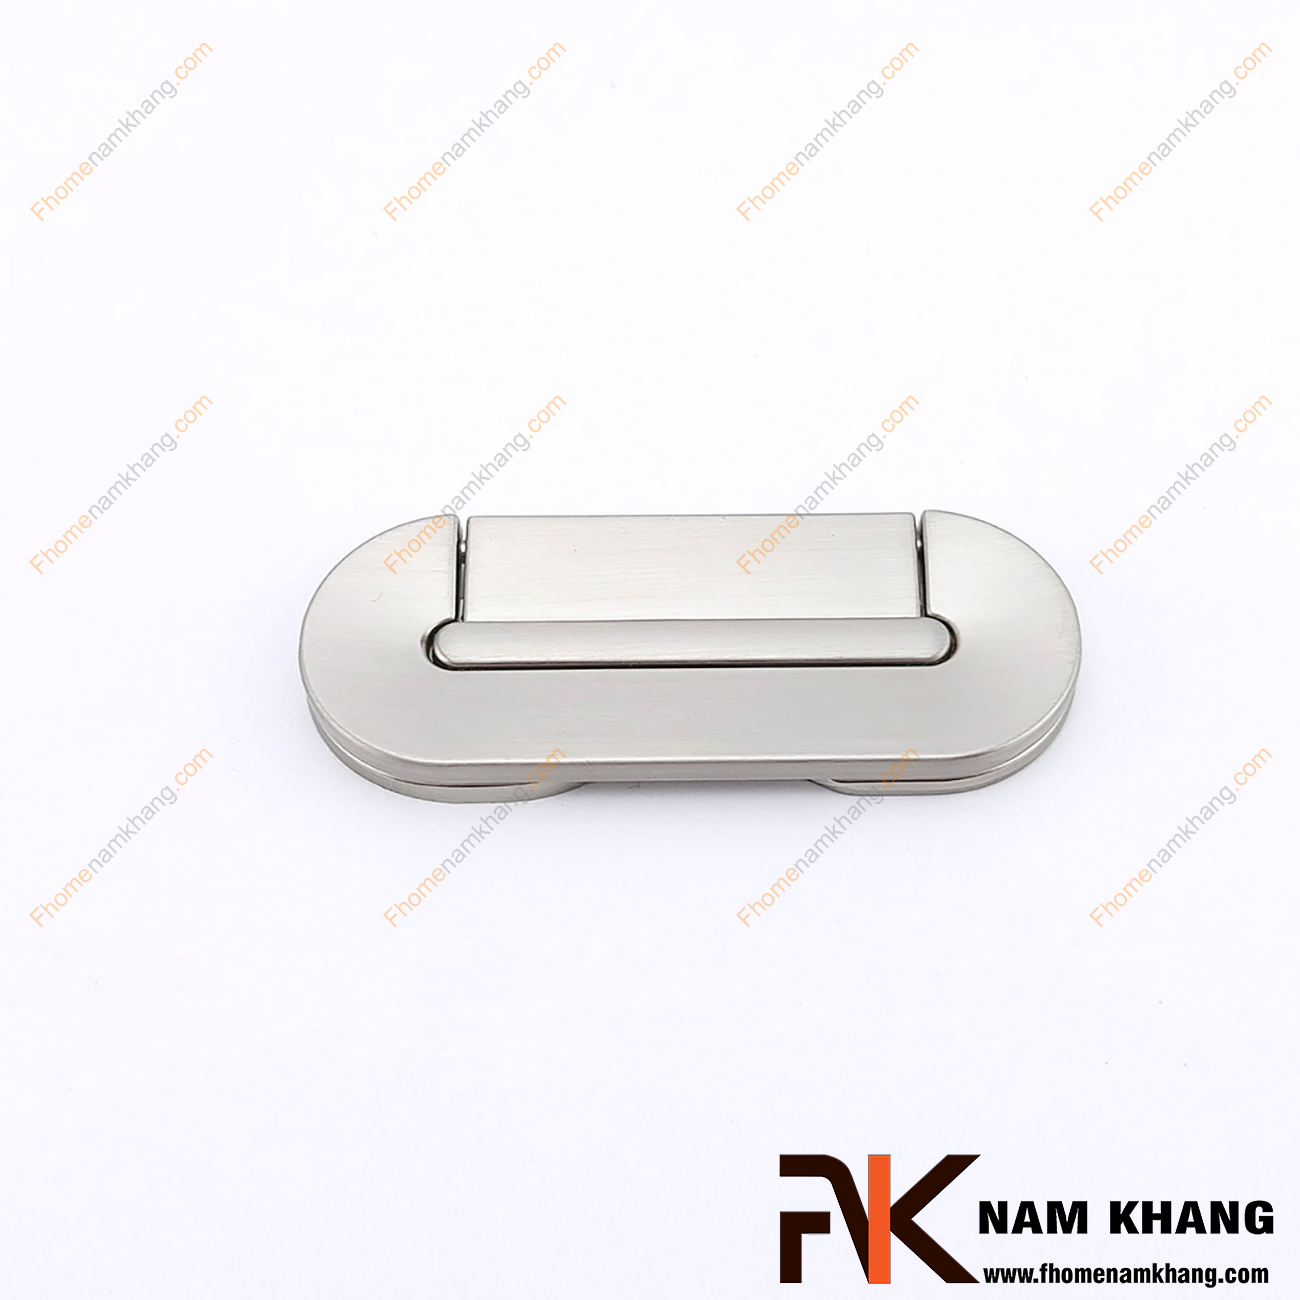 Tay nắm tủ hiện đại dạng vòng màu bạc NK381-64B là một dạng tay nắm tủ thiết kế rất tinh tế và hiện đại